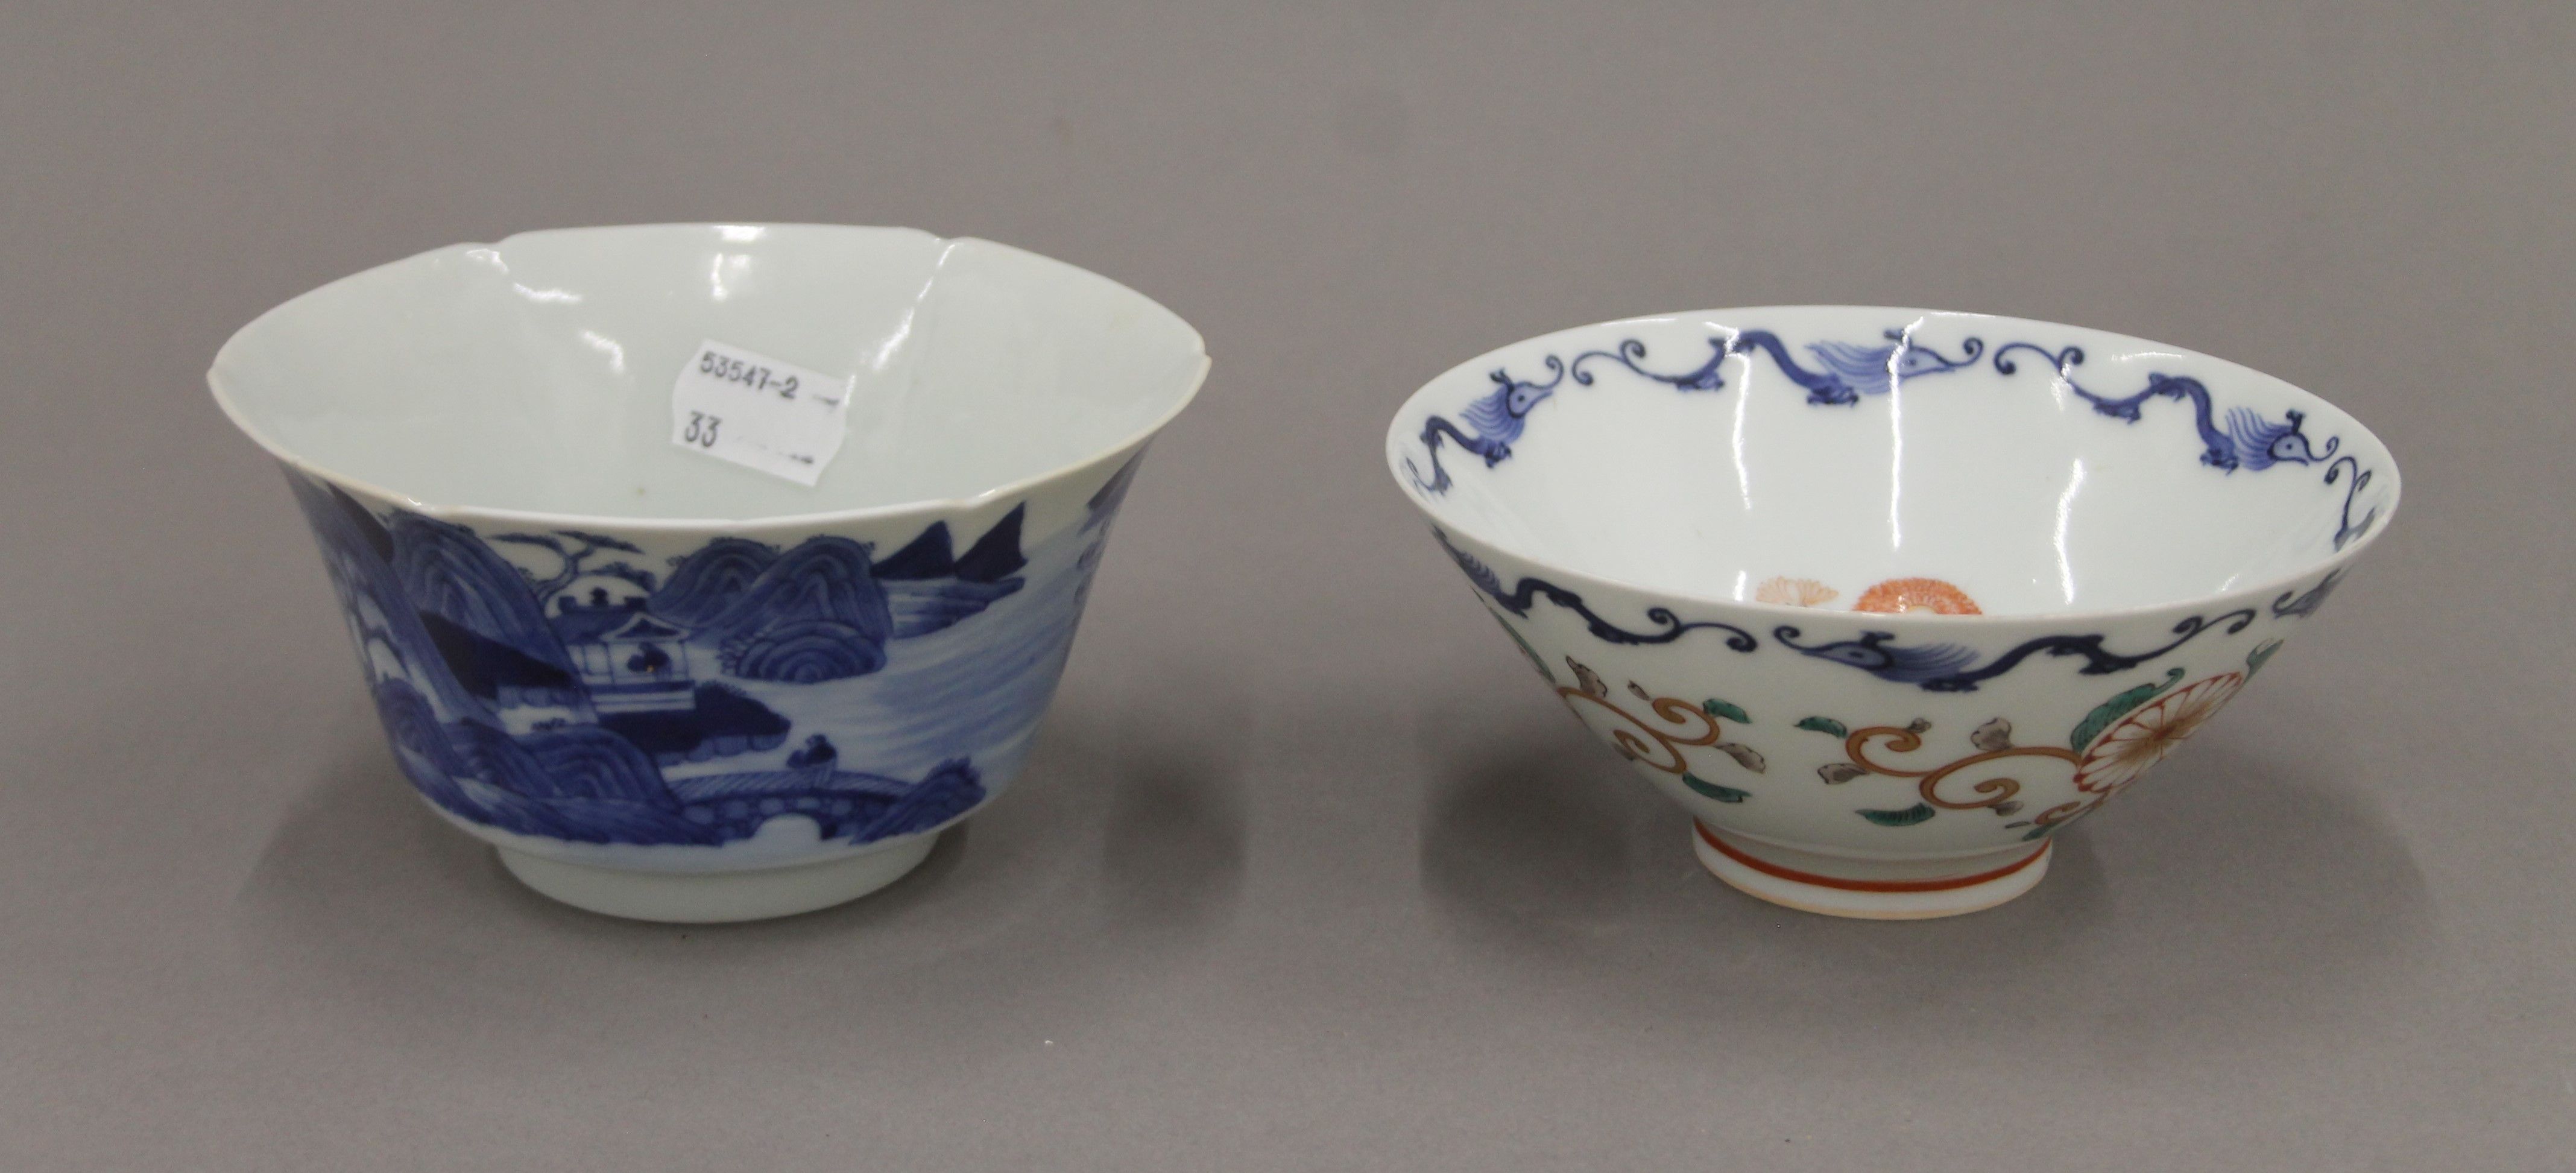 Two Oriental porcelain bowls. The largest 13.5 cm diameter.